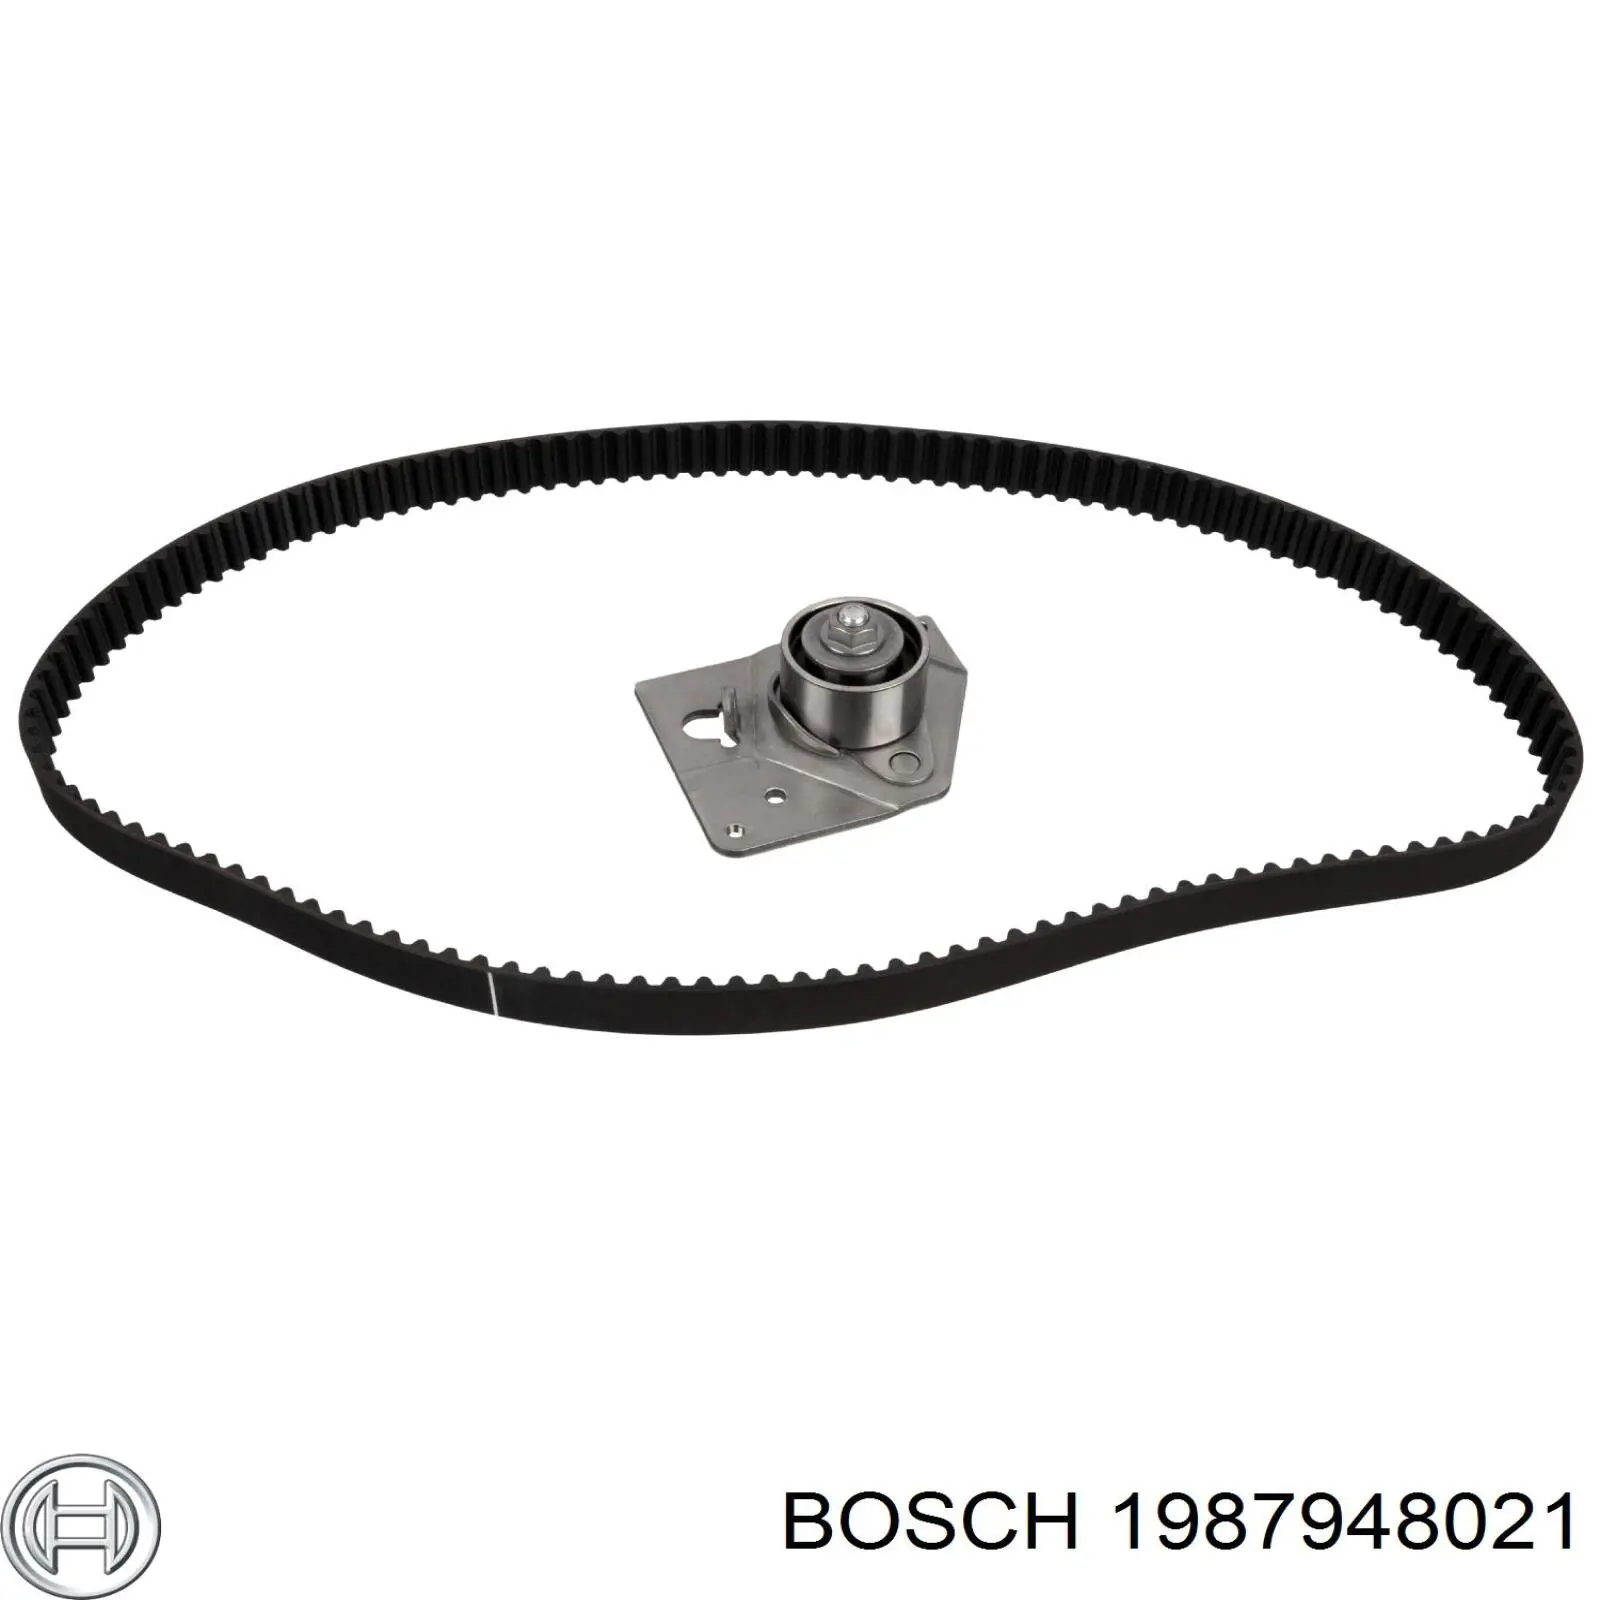 1987948021 Bosch kit de distribución